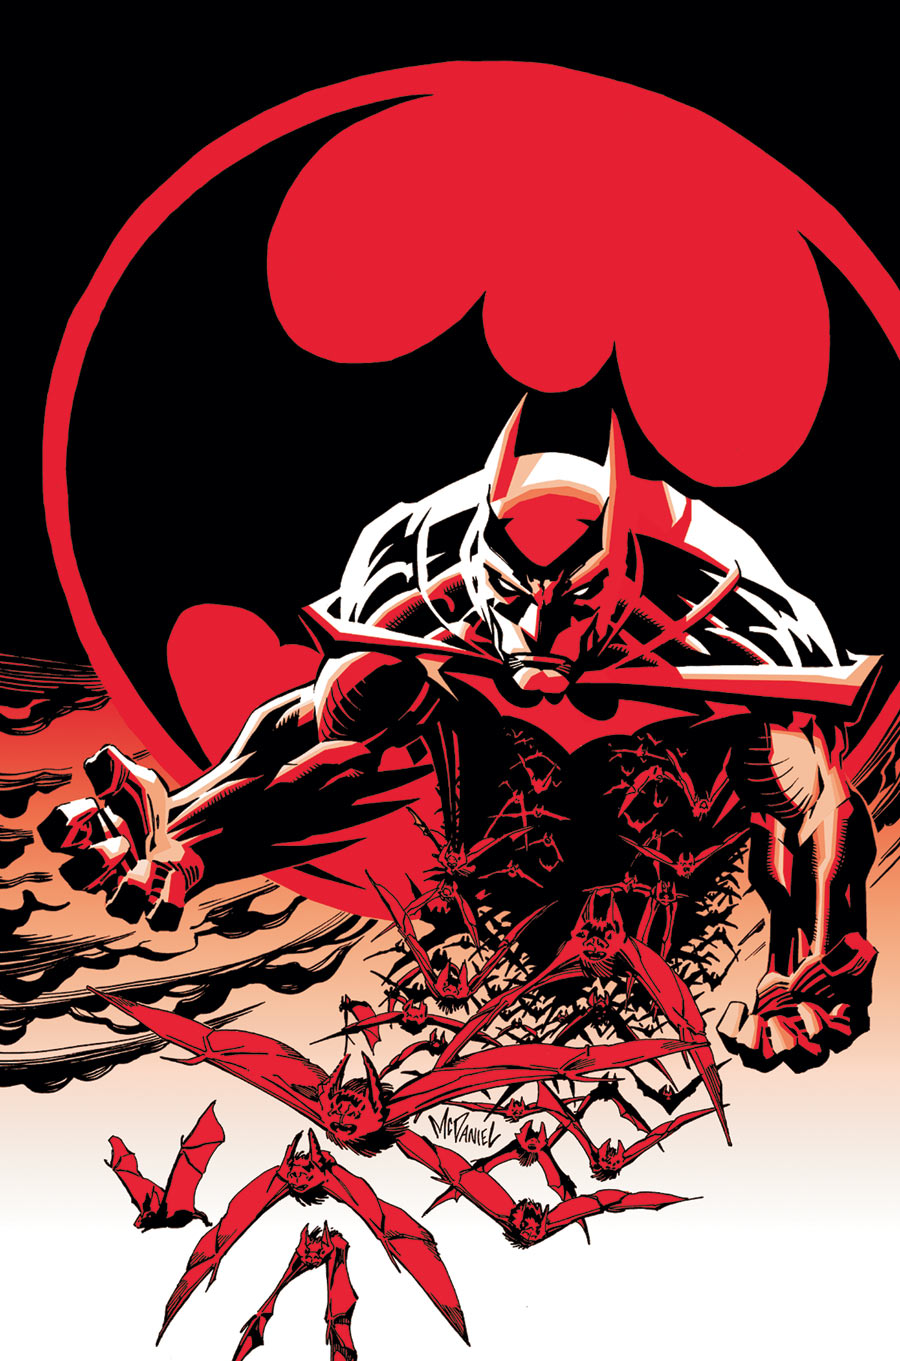 DC COMICS PRESENTS: BATMAN #1